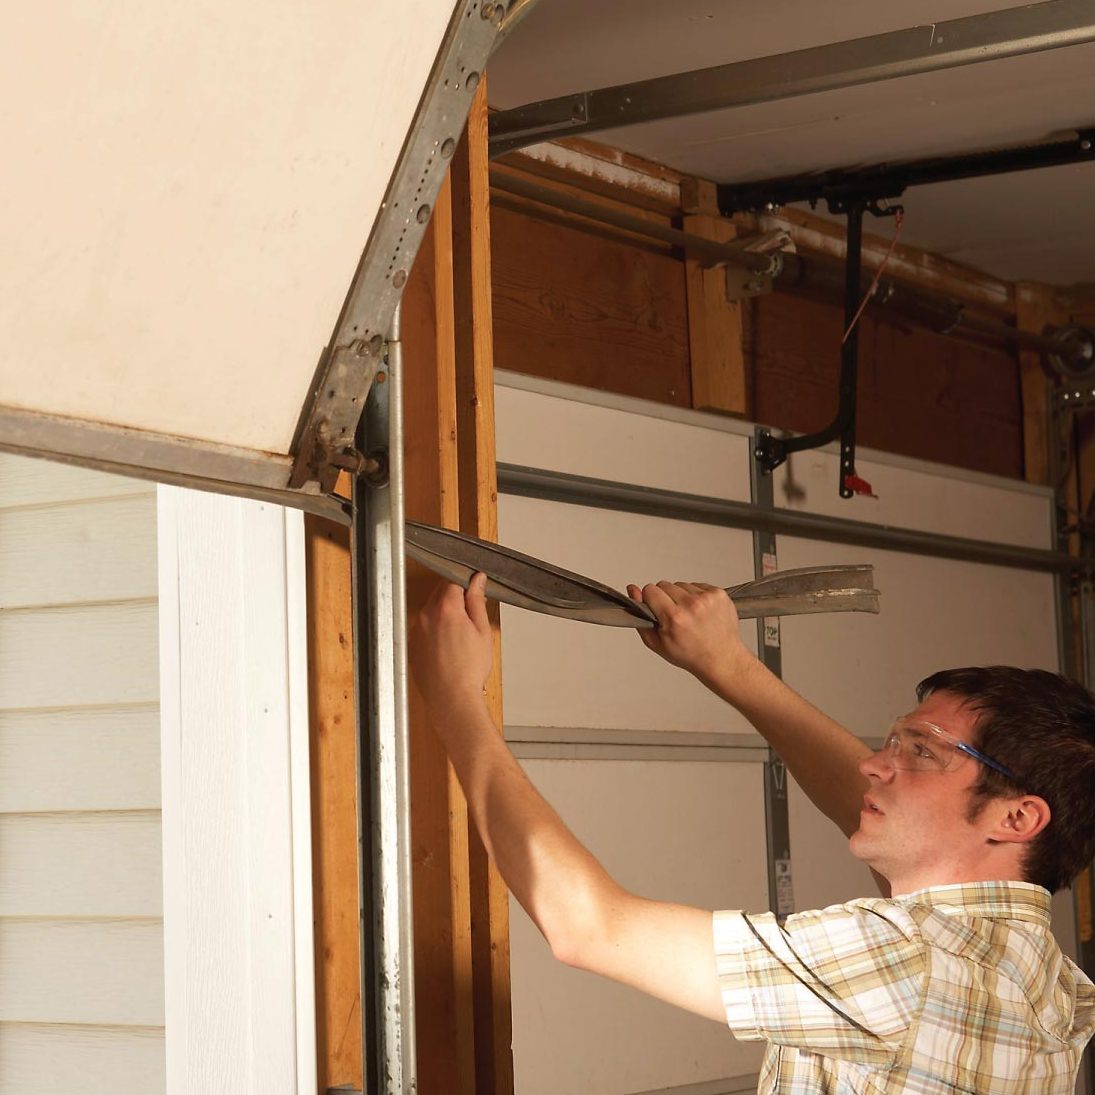 How to seal a garage door - Door Superstore Help & Advice